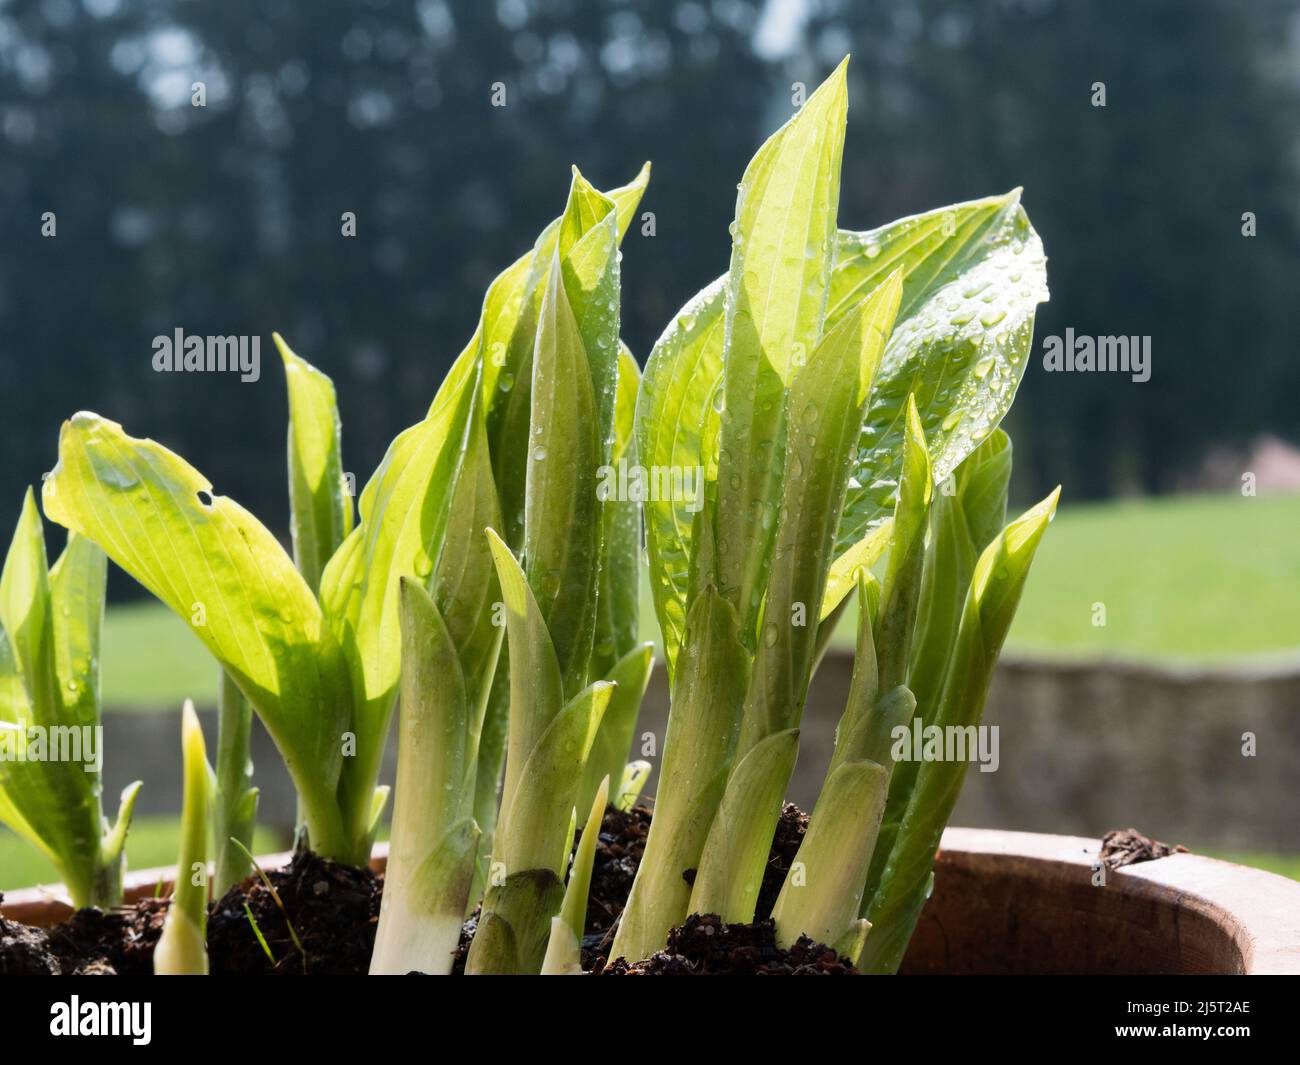 Pousses Hosta de printemps de la plante en pot, de nouvelles pousses vertes poussent hors du sol; beau jardin à l'arrière-plan Banque D'Images